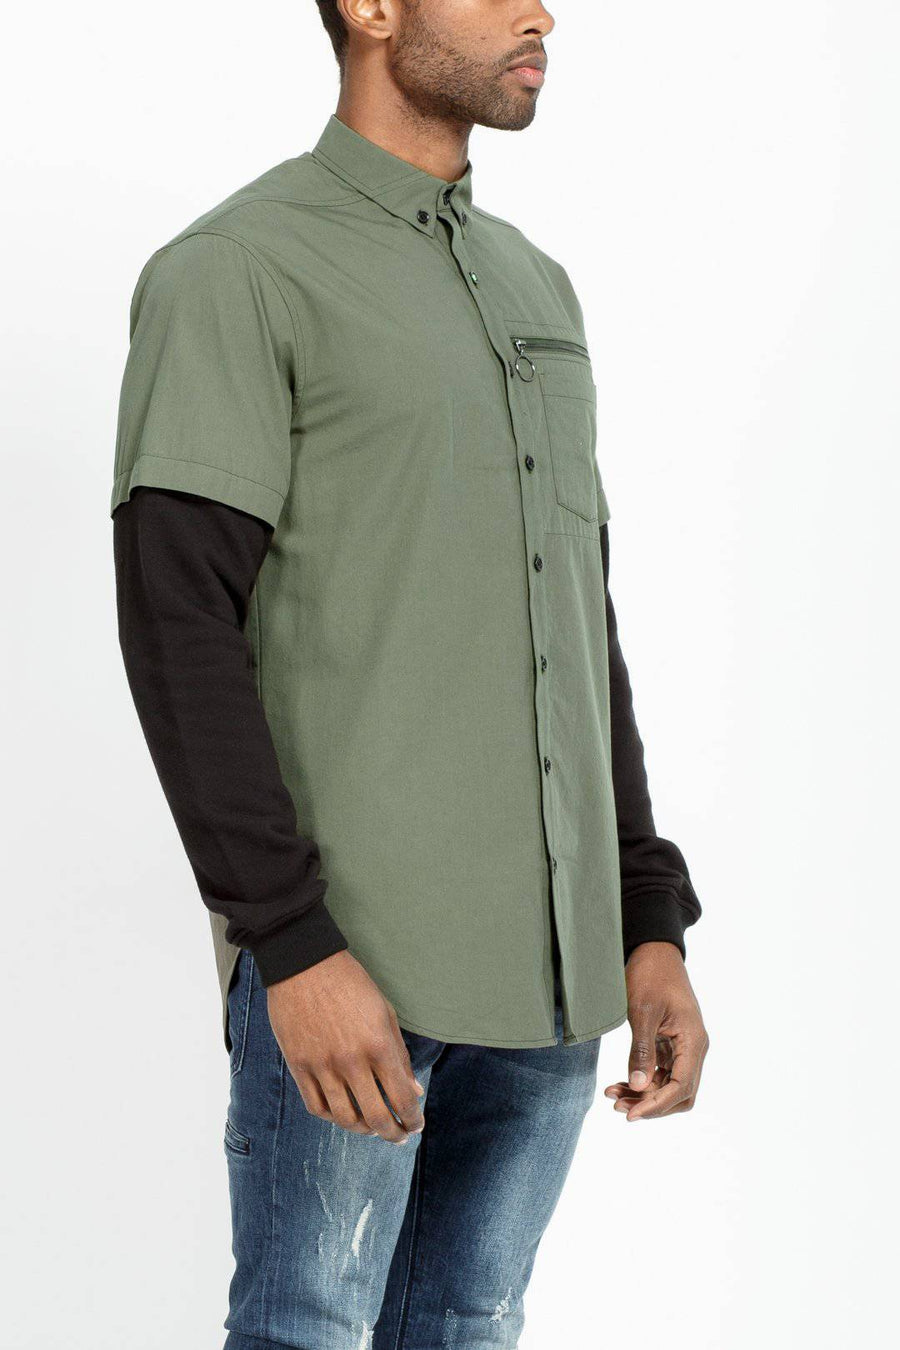 Konus Men's 2 Layer Shirt in Grape Leaf - shopatkonus